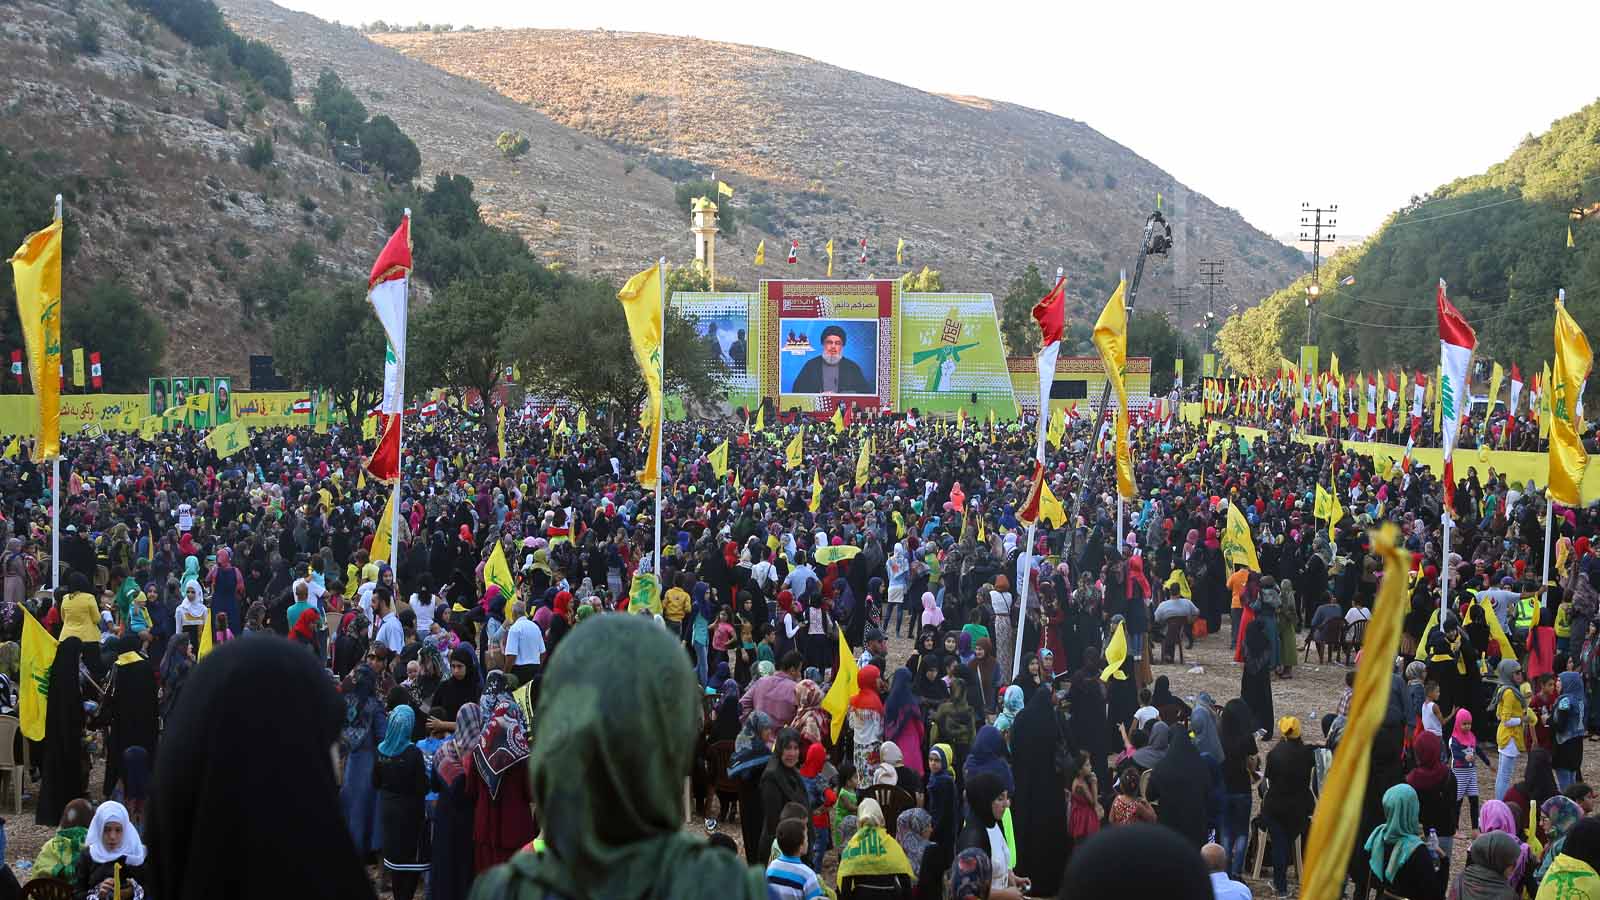 "حزب الله": "الكاش" لمقاومة العقوبات